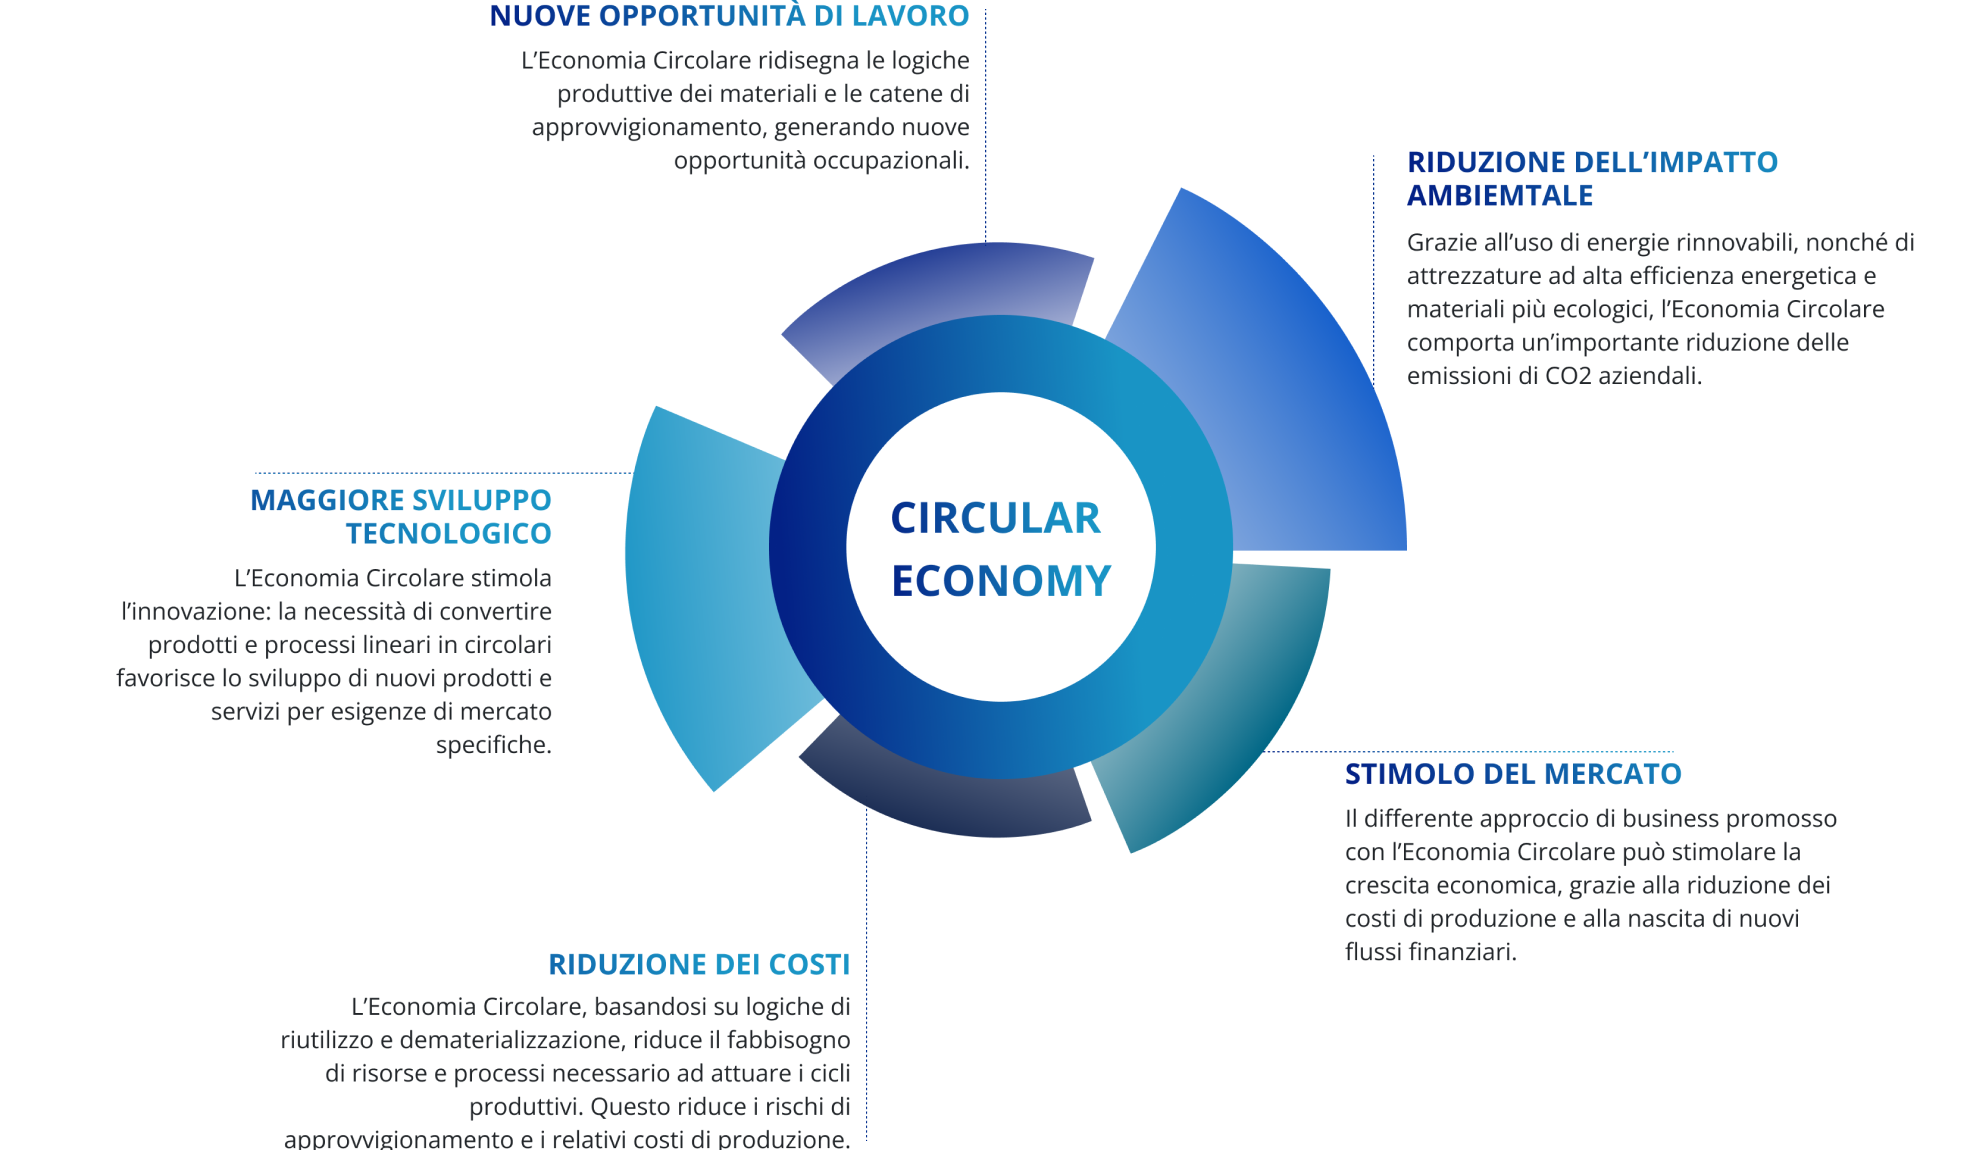 Curcular_economy_img